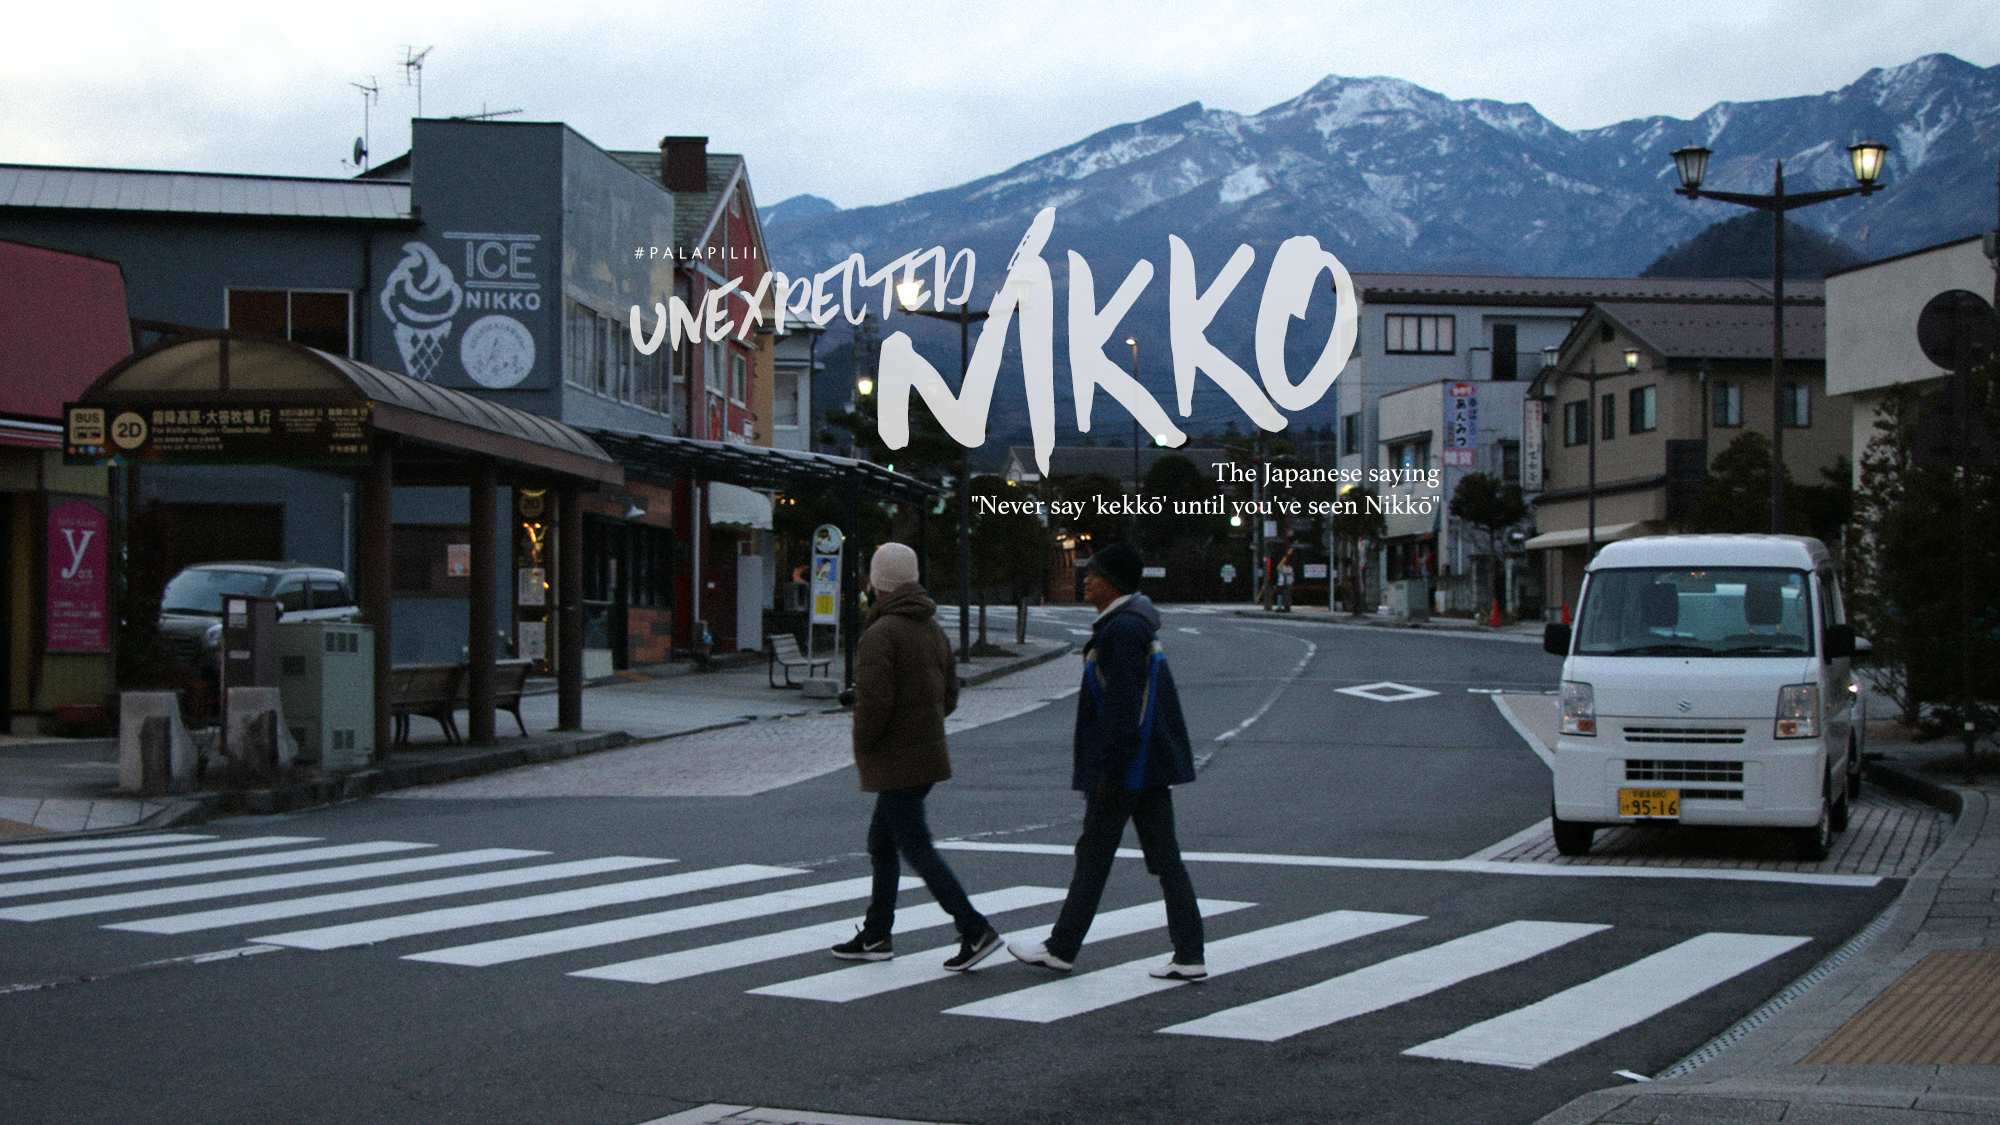 นิกโกะ เป็นเมืองชิคๆ | The Japanese saying “Never say ‘kekkō’ until you’ve seen Nikkō